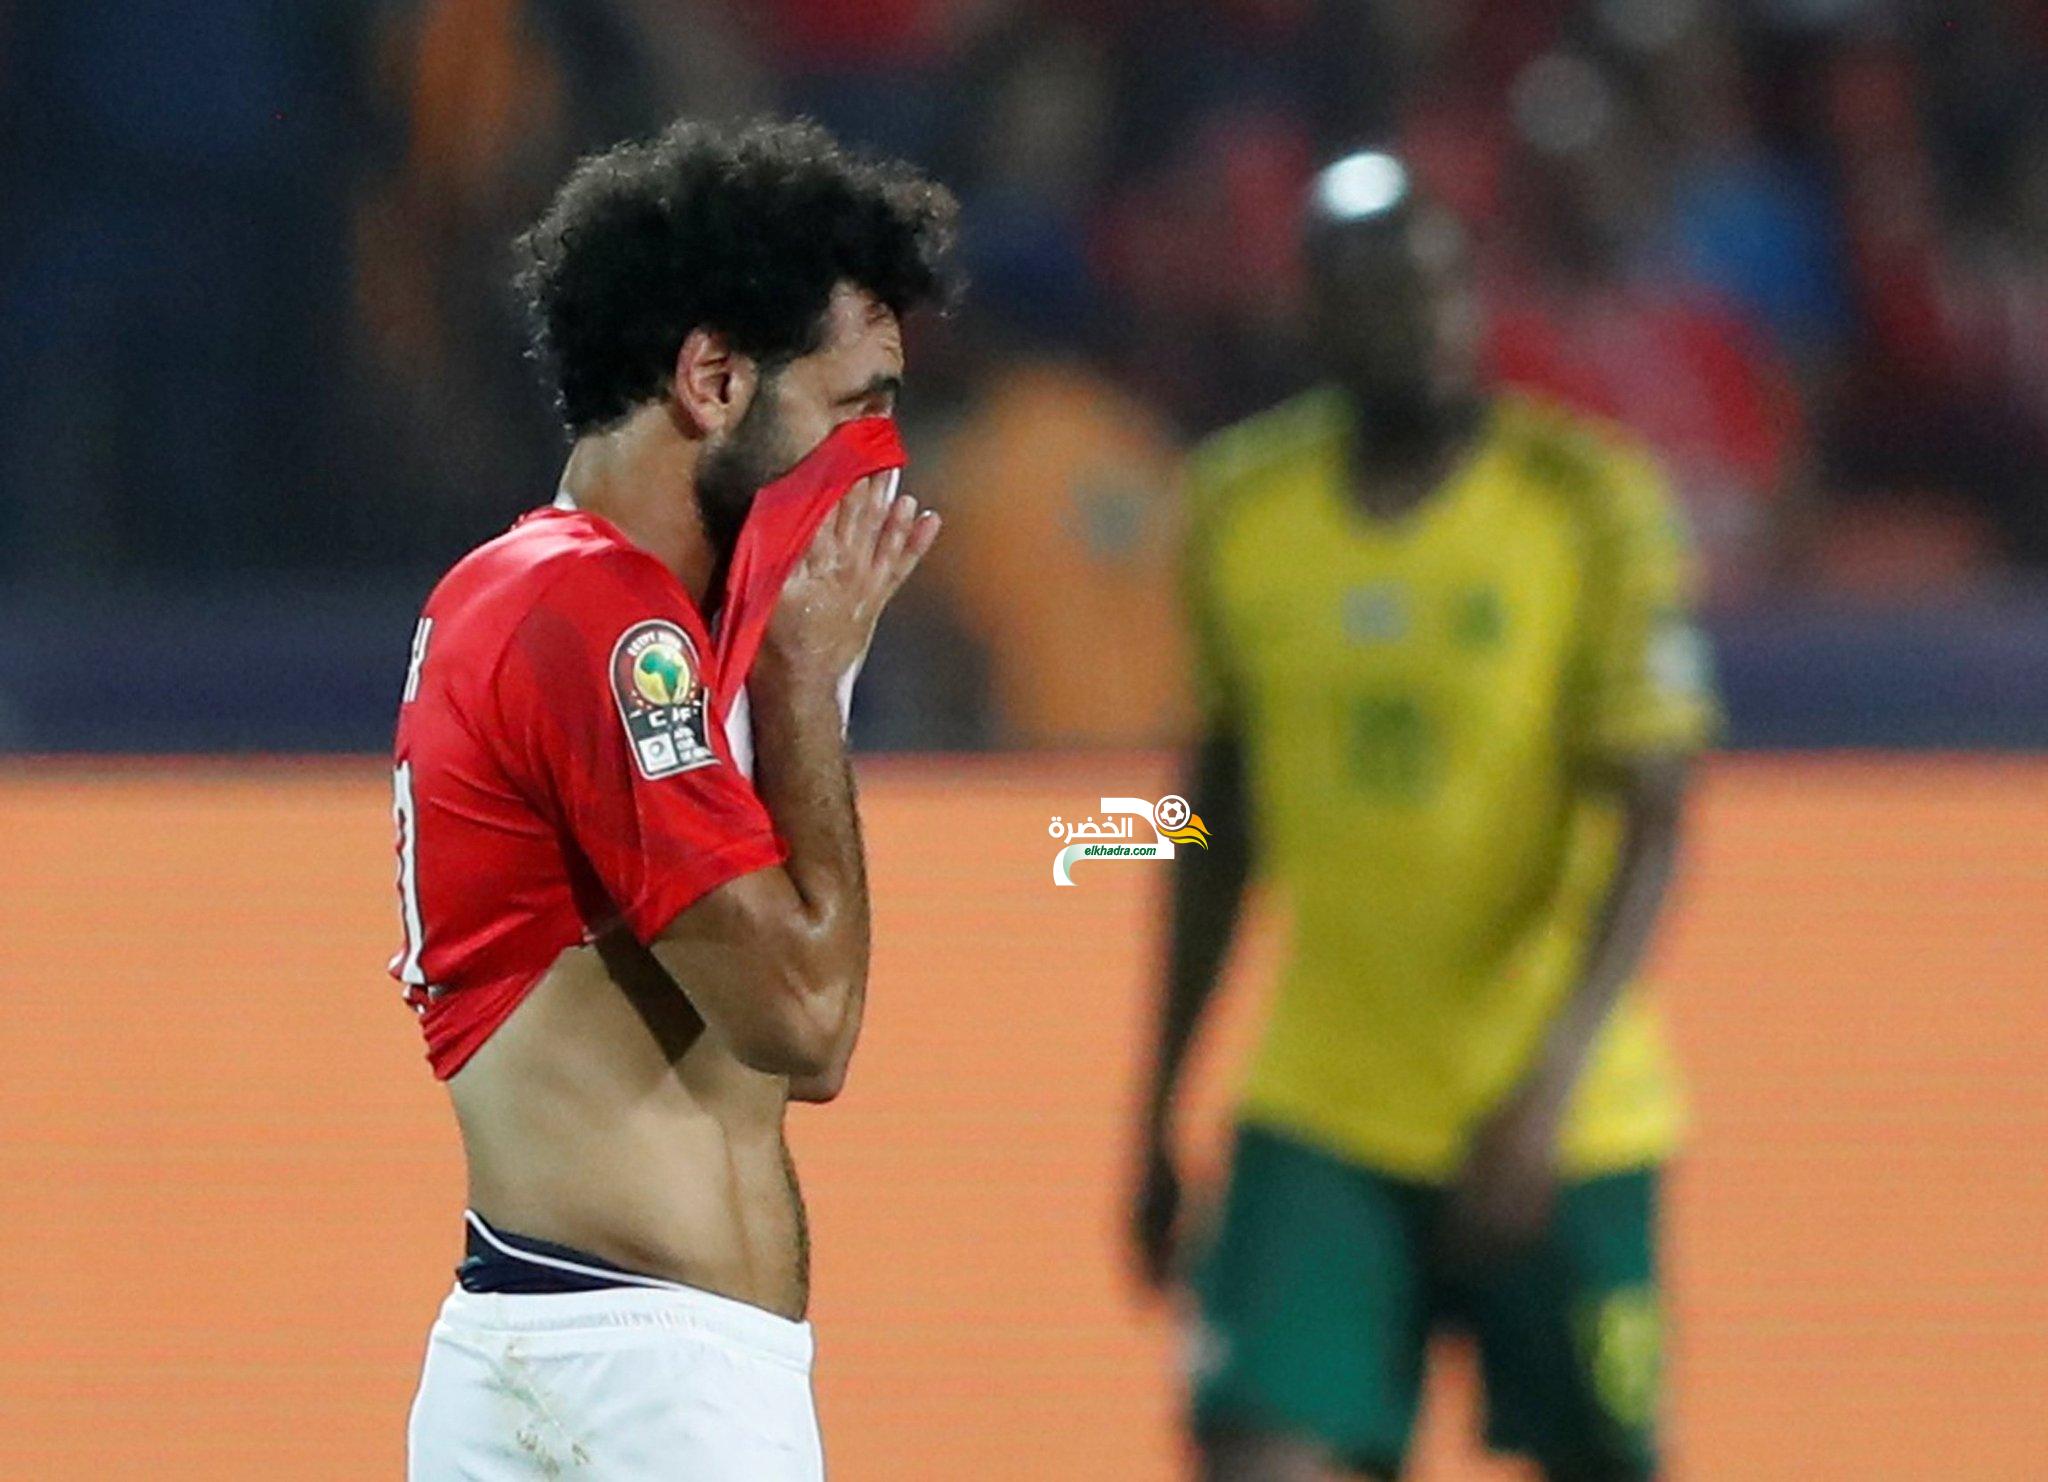 ‏رسميا - المنتخب المصري يغادر كأس أمم إفريقيا من دور ال16 1